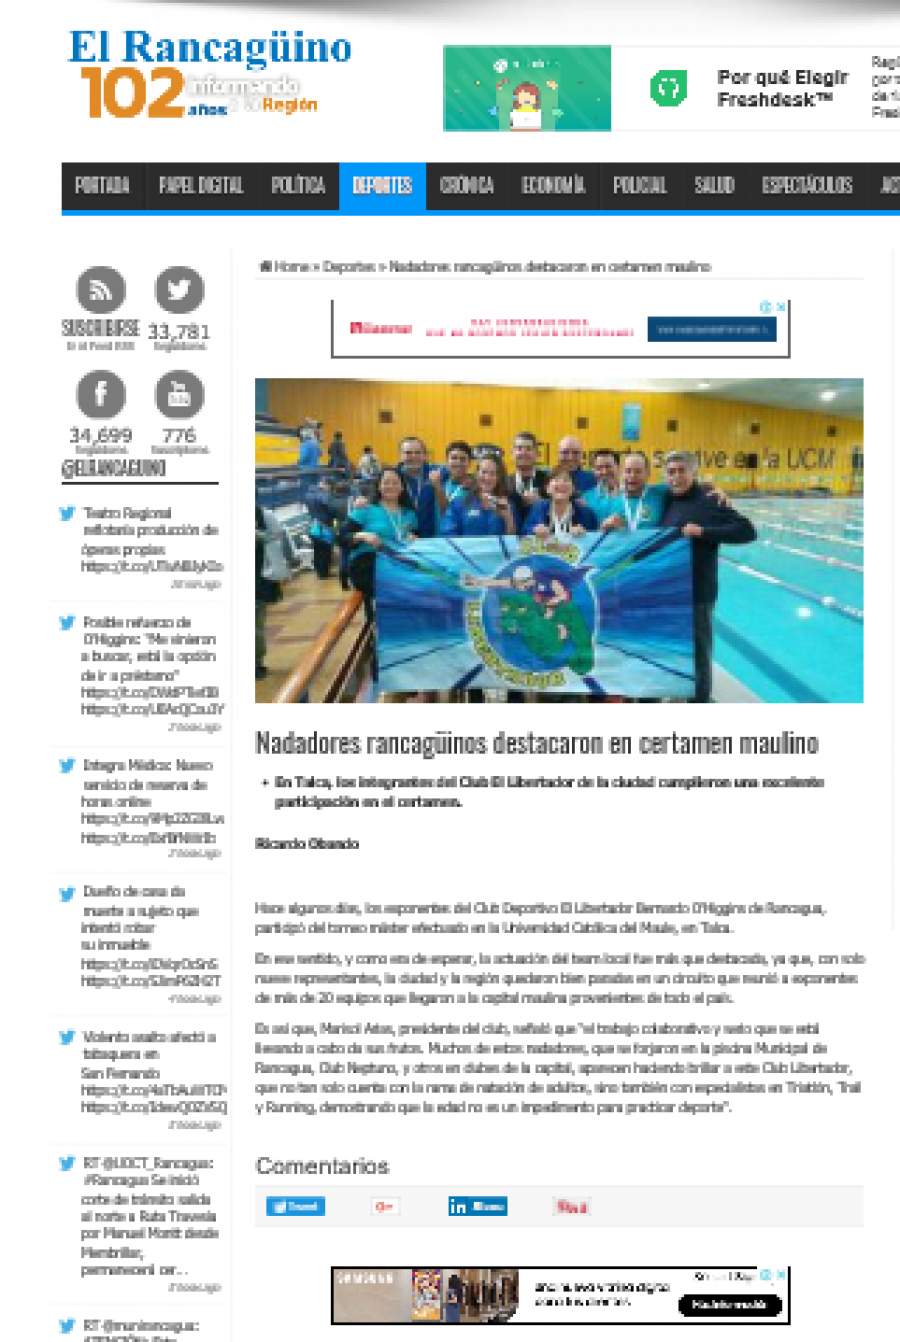 01 de julio en El Santiaguino: “Nadadores rancagüinos destacaron en certamen maulino”